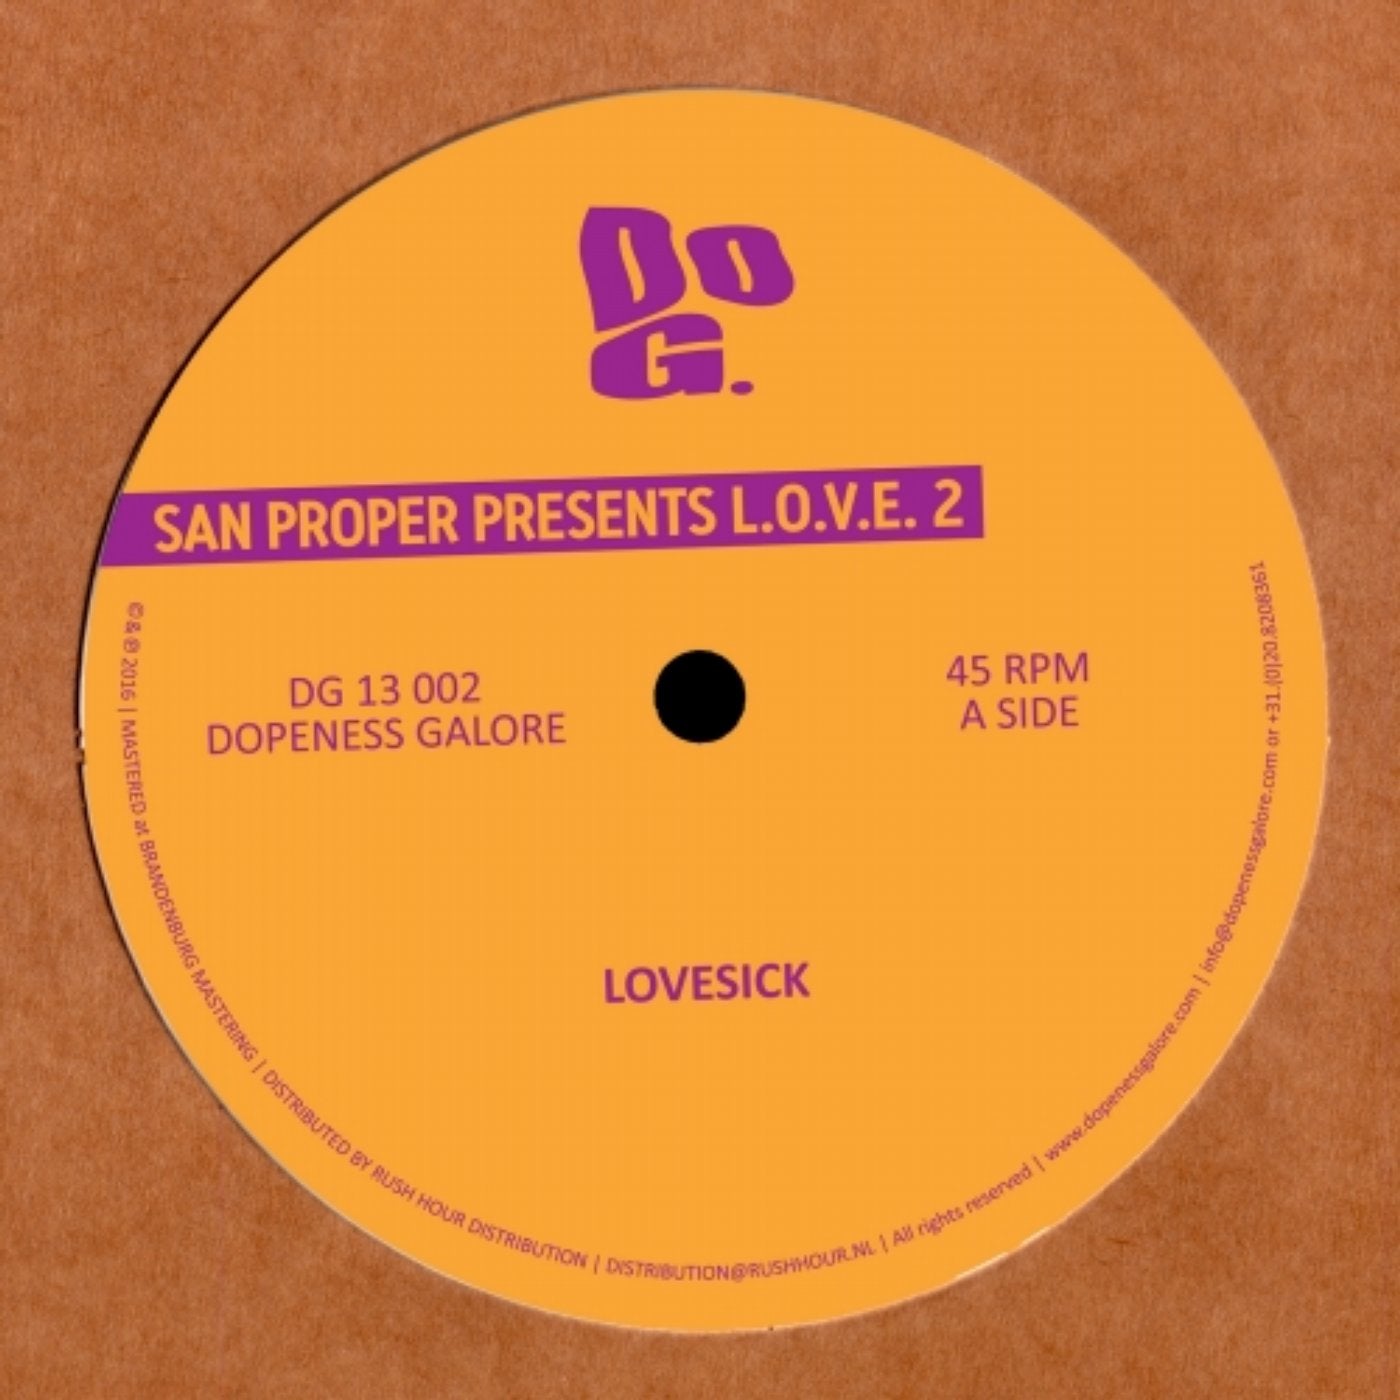 San Proper Presents L.O.V.E. 2